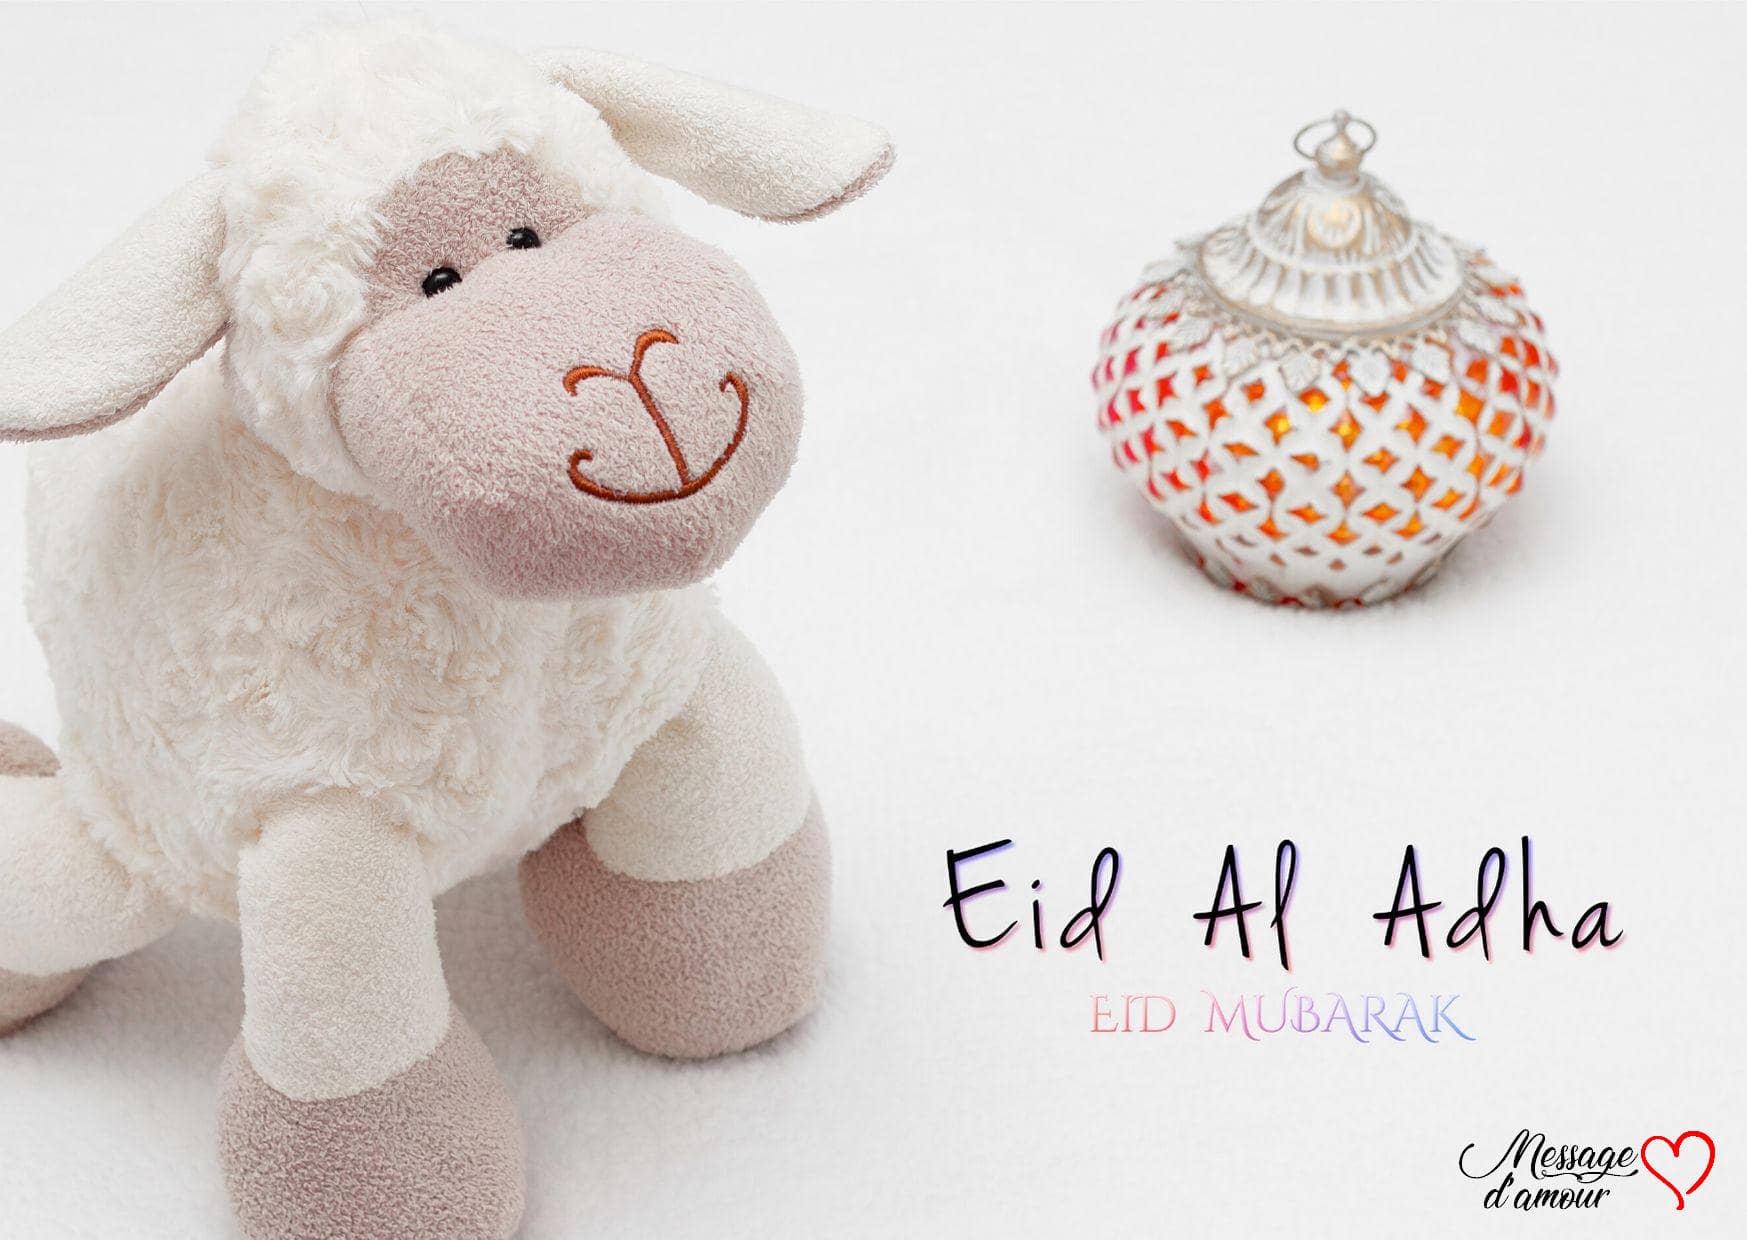 Eid al adha